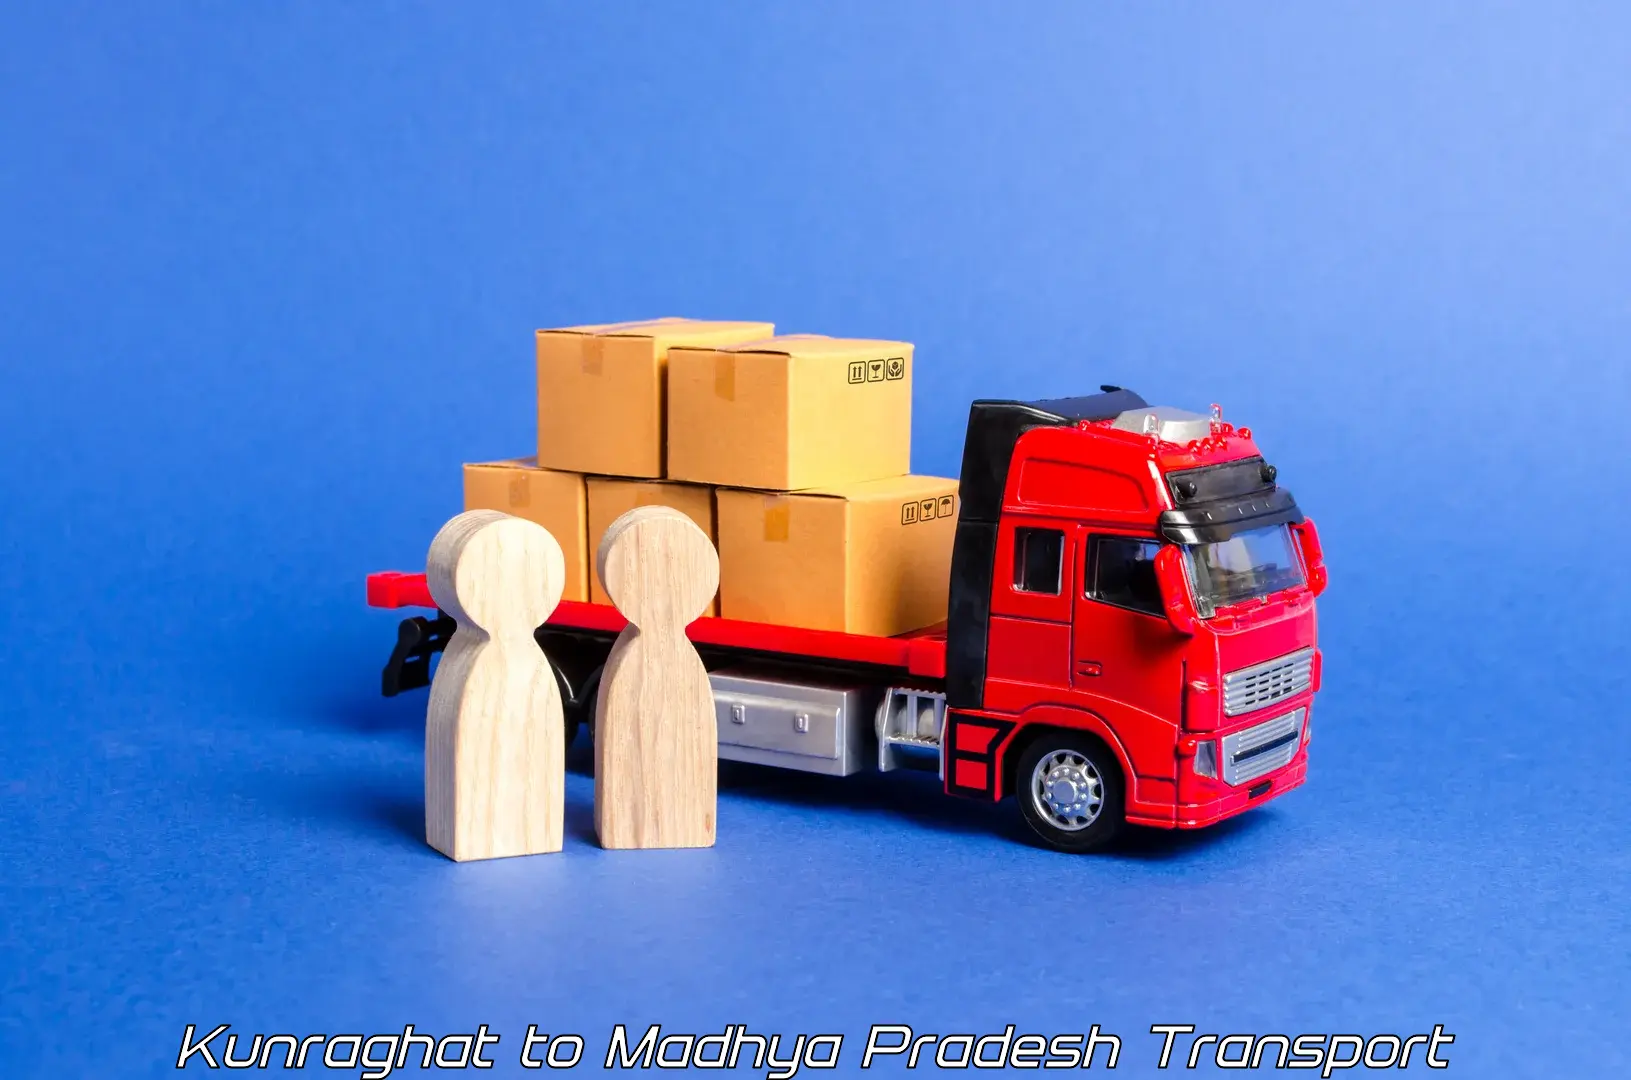 Vehicle transport services Kunraghat to Satna